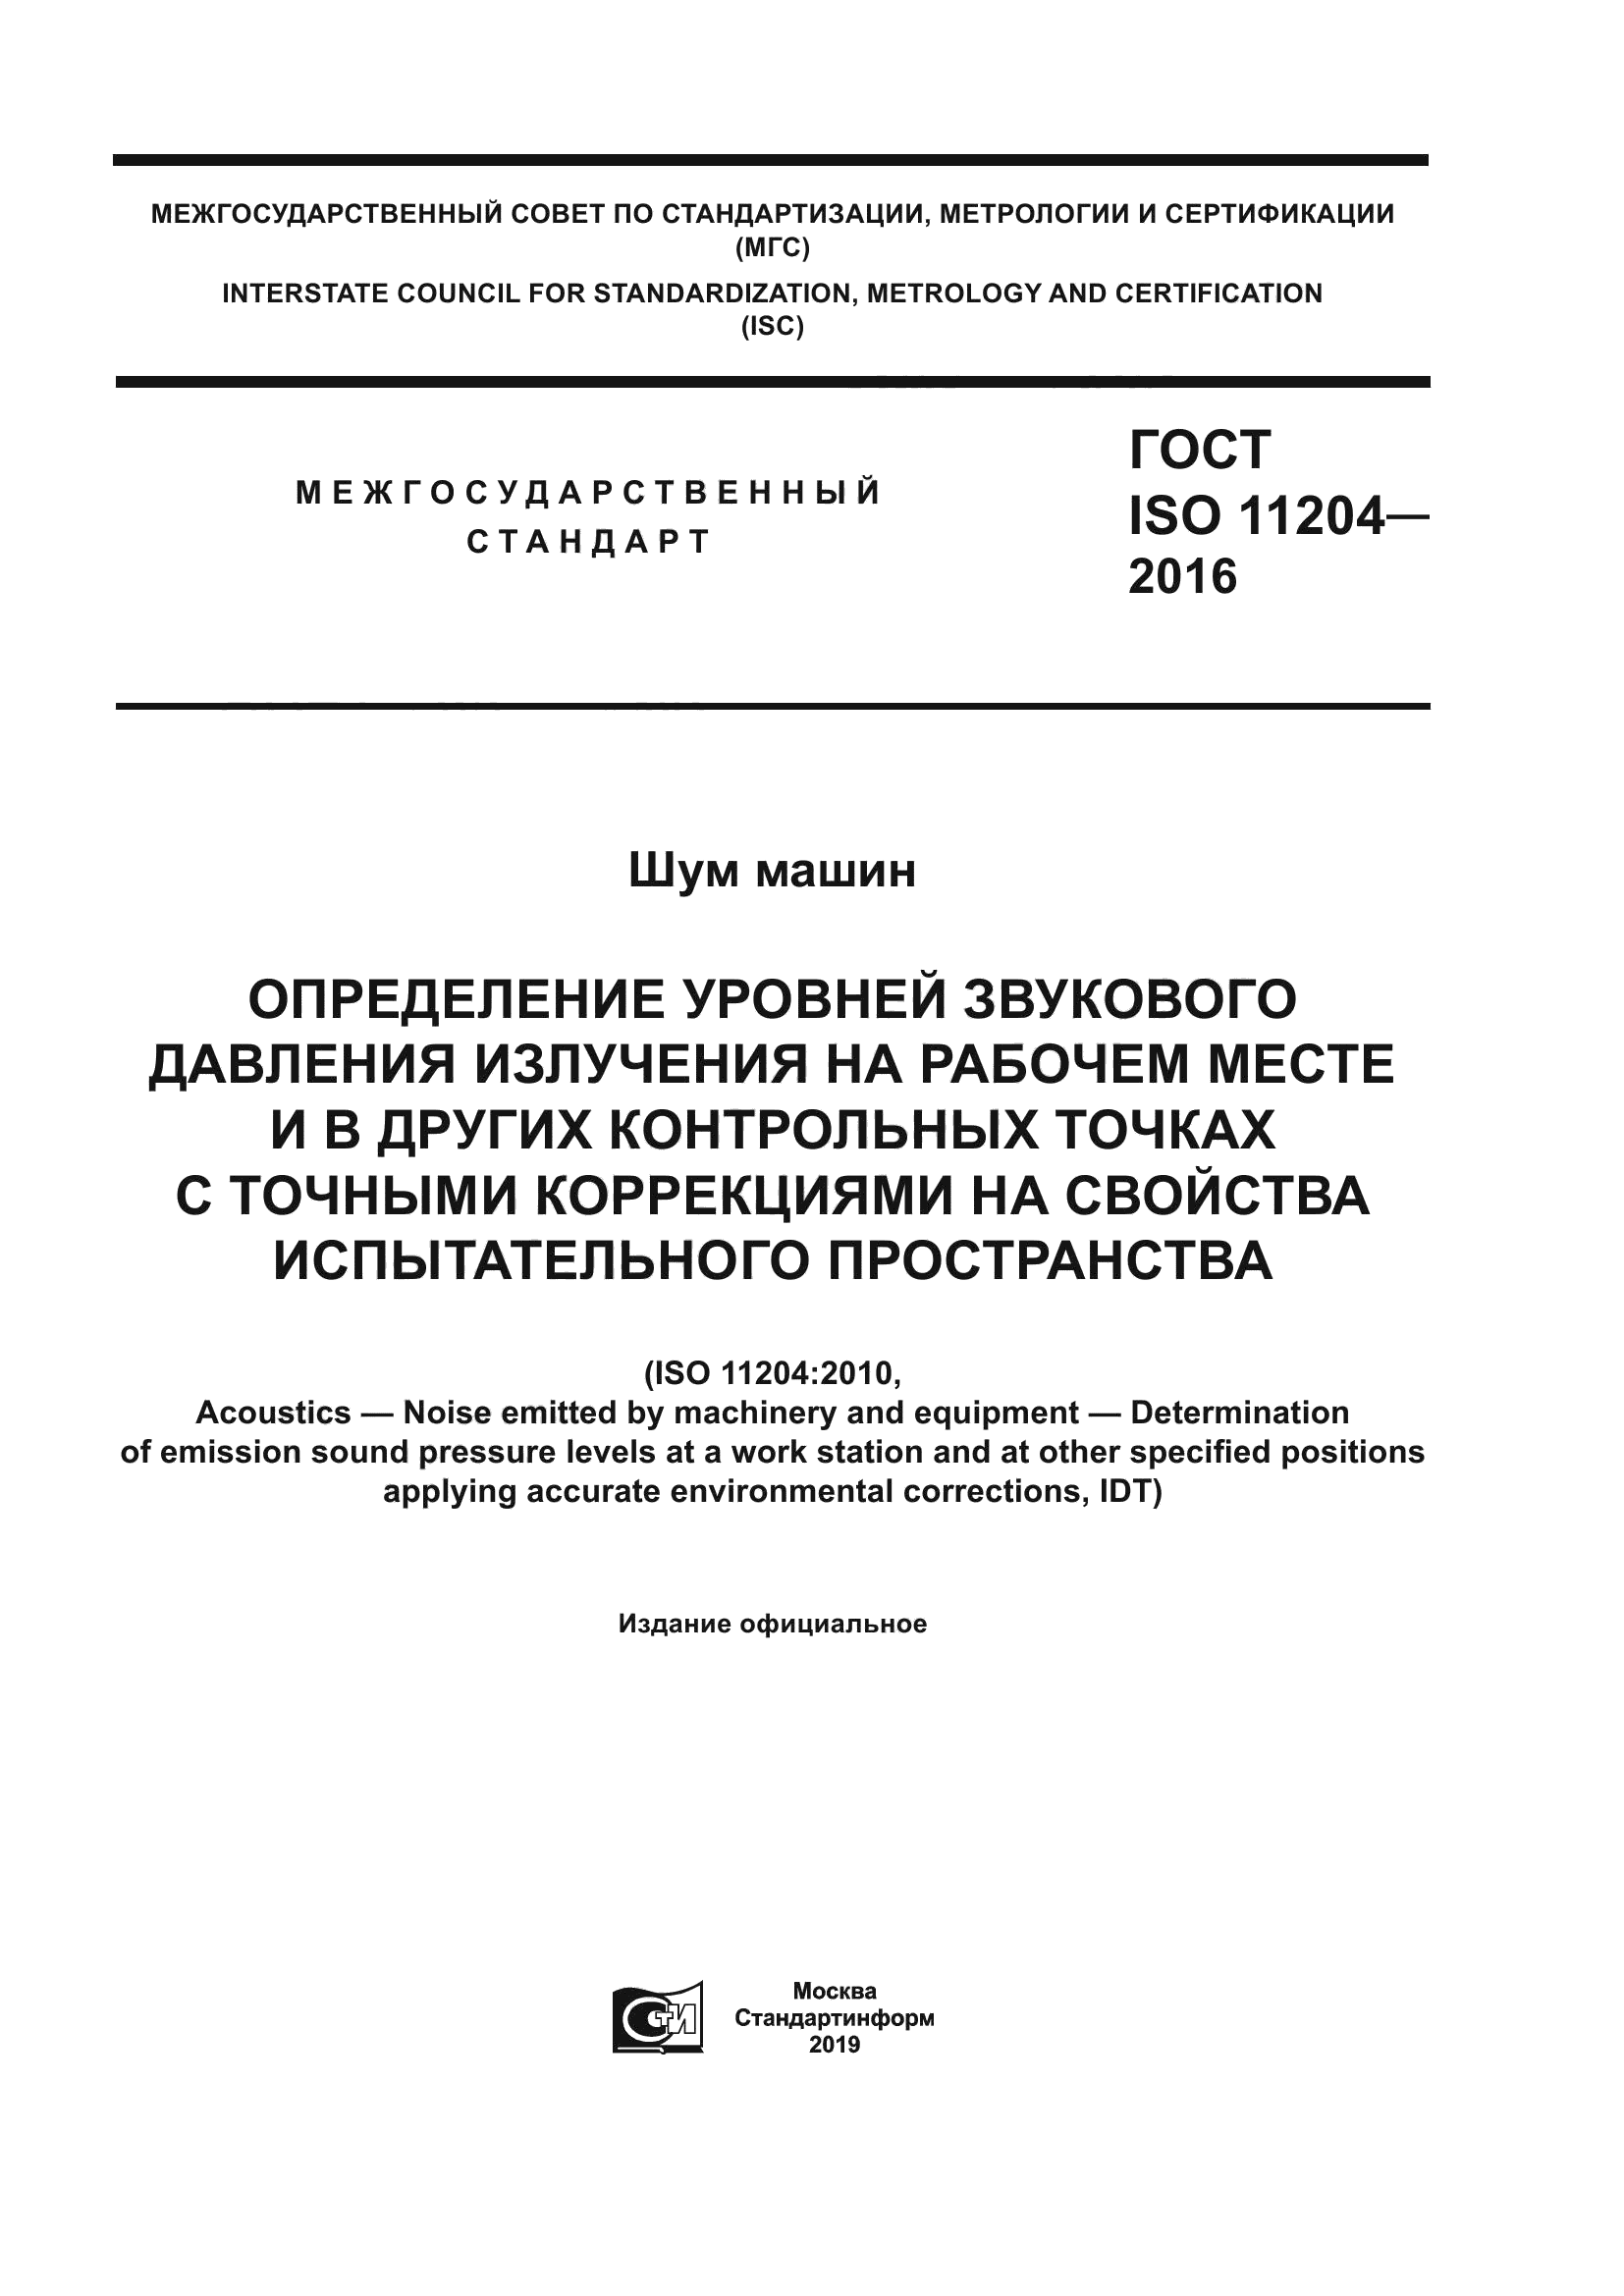 ГОСТ ISO 11204-2016